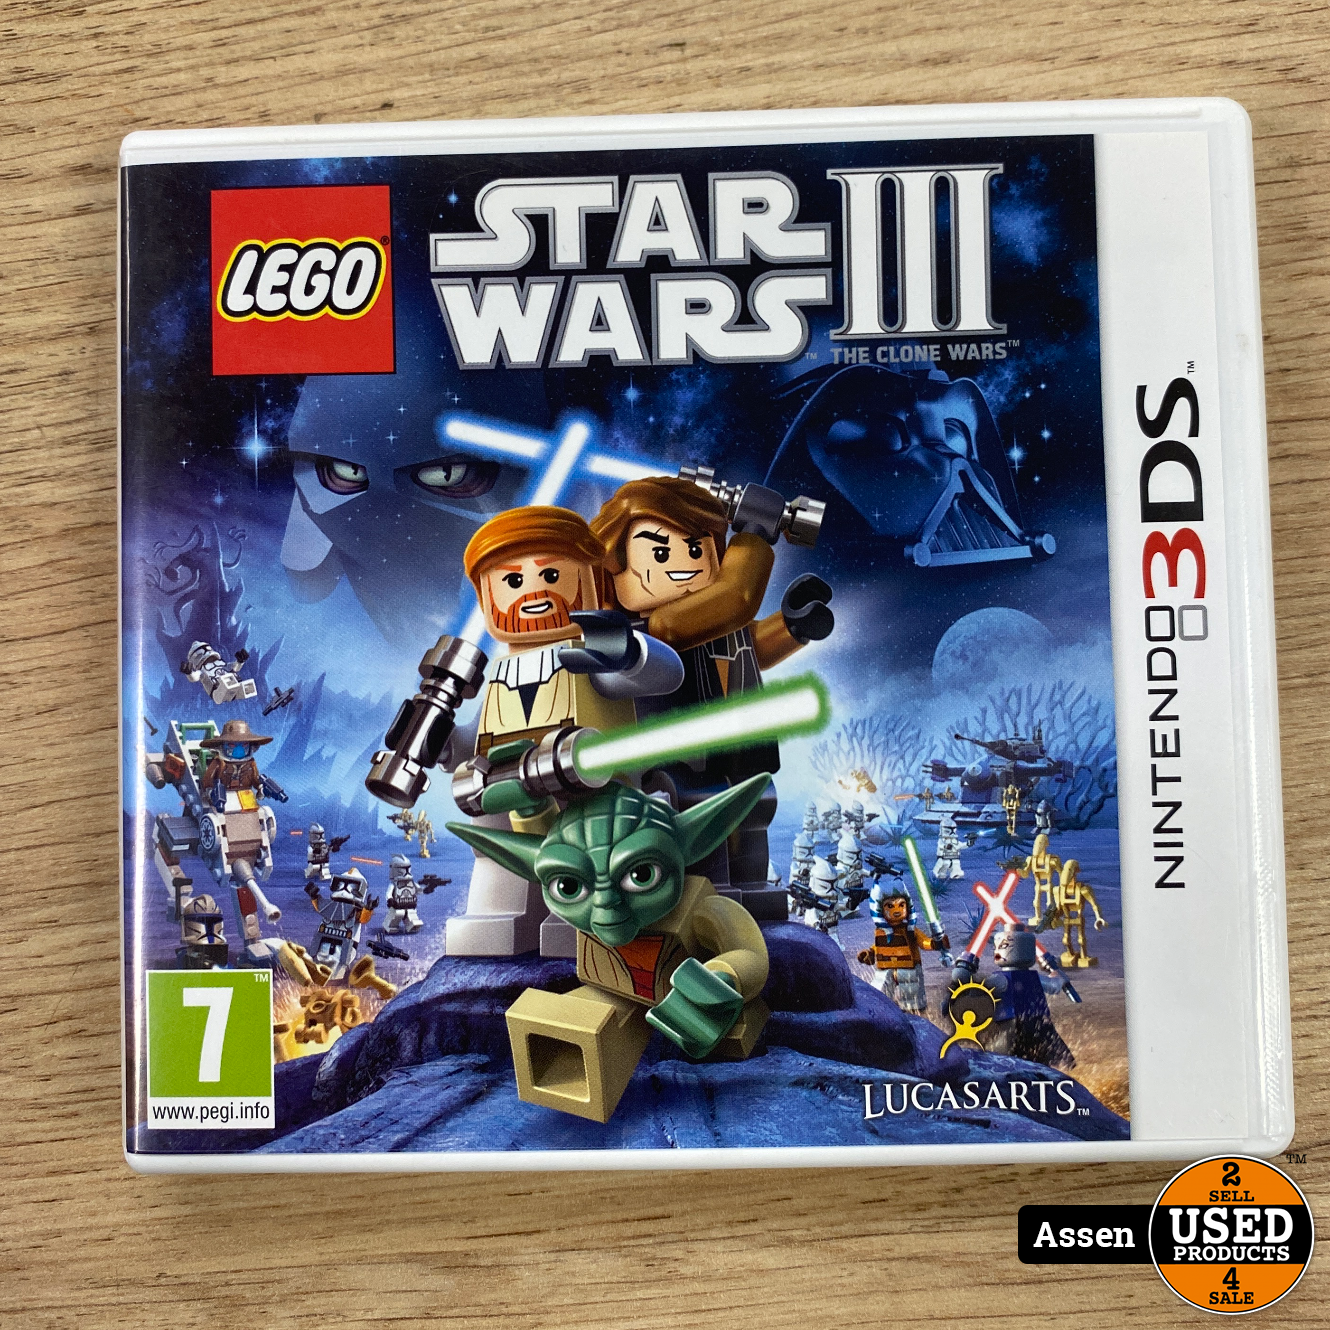 Belang Een evenement uitspraak Star Wars III || 3DS Game - Used Products Assen